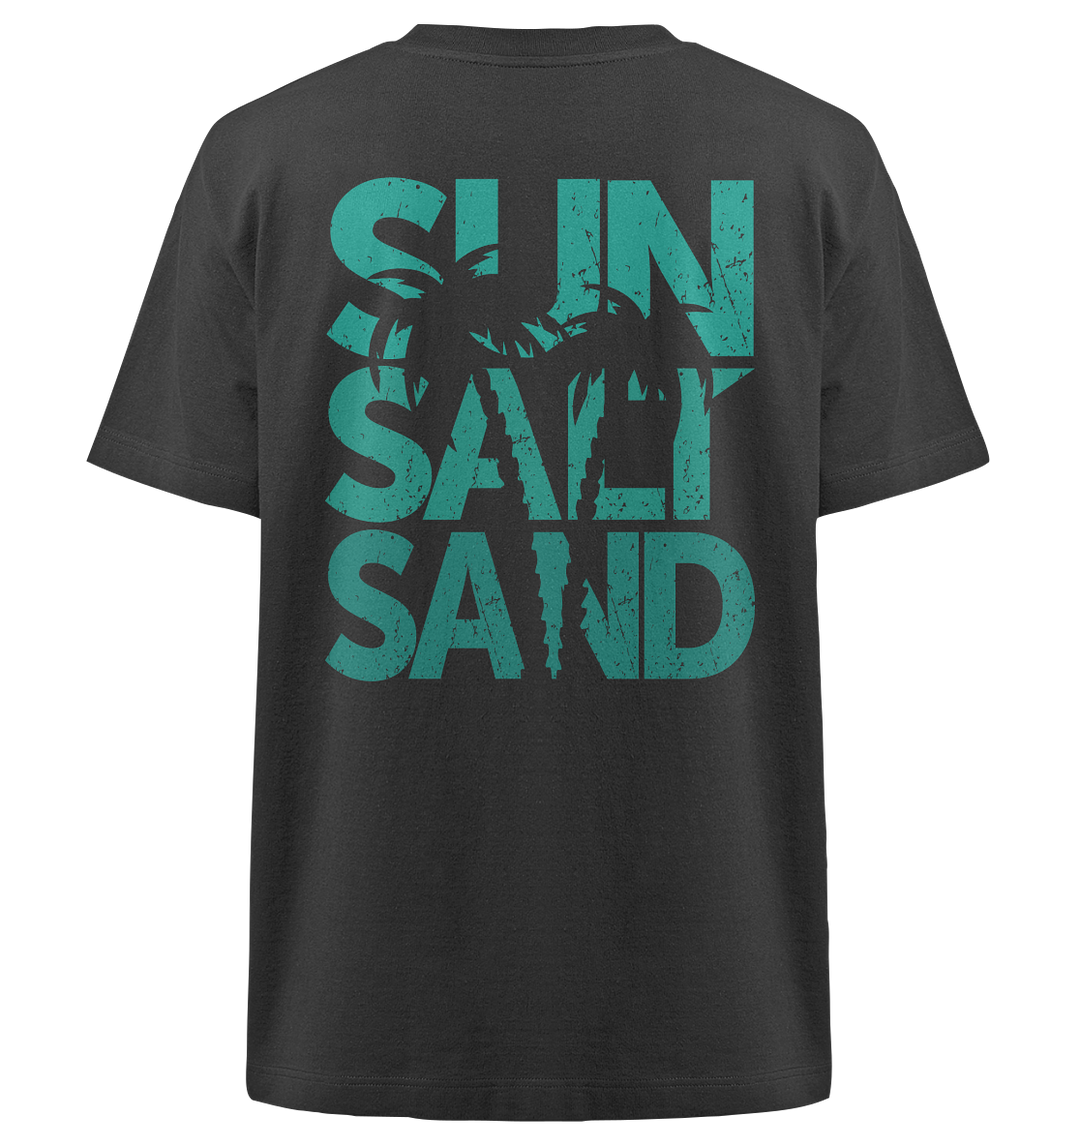 Sun Salt Sand Sommer 24 Herren - Heavy Oversized Organic Shirt Black Herren Heavy Oversized Shirt Heavy Oversized Organic Shirt True Statement